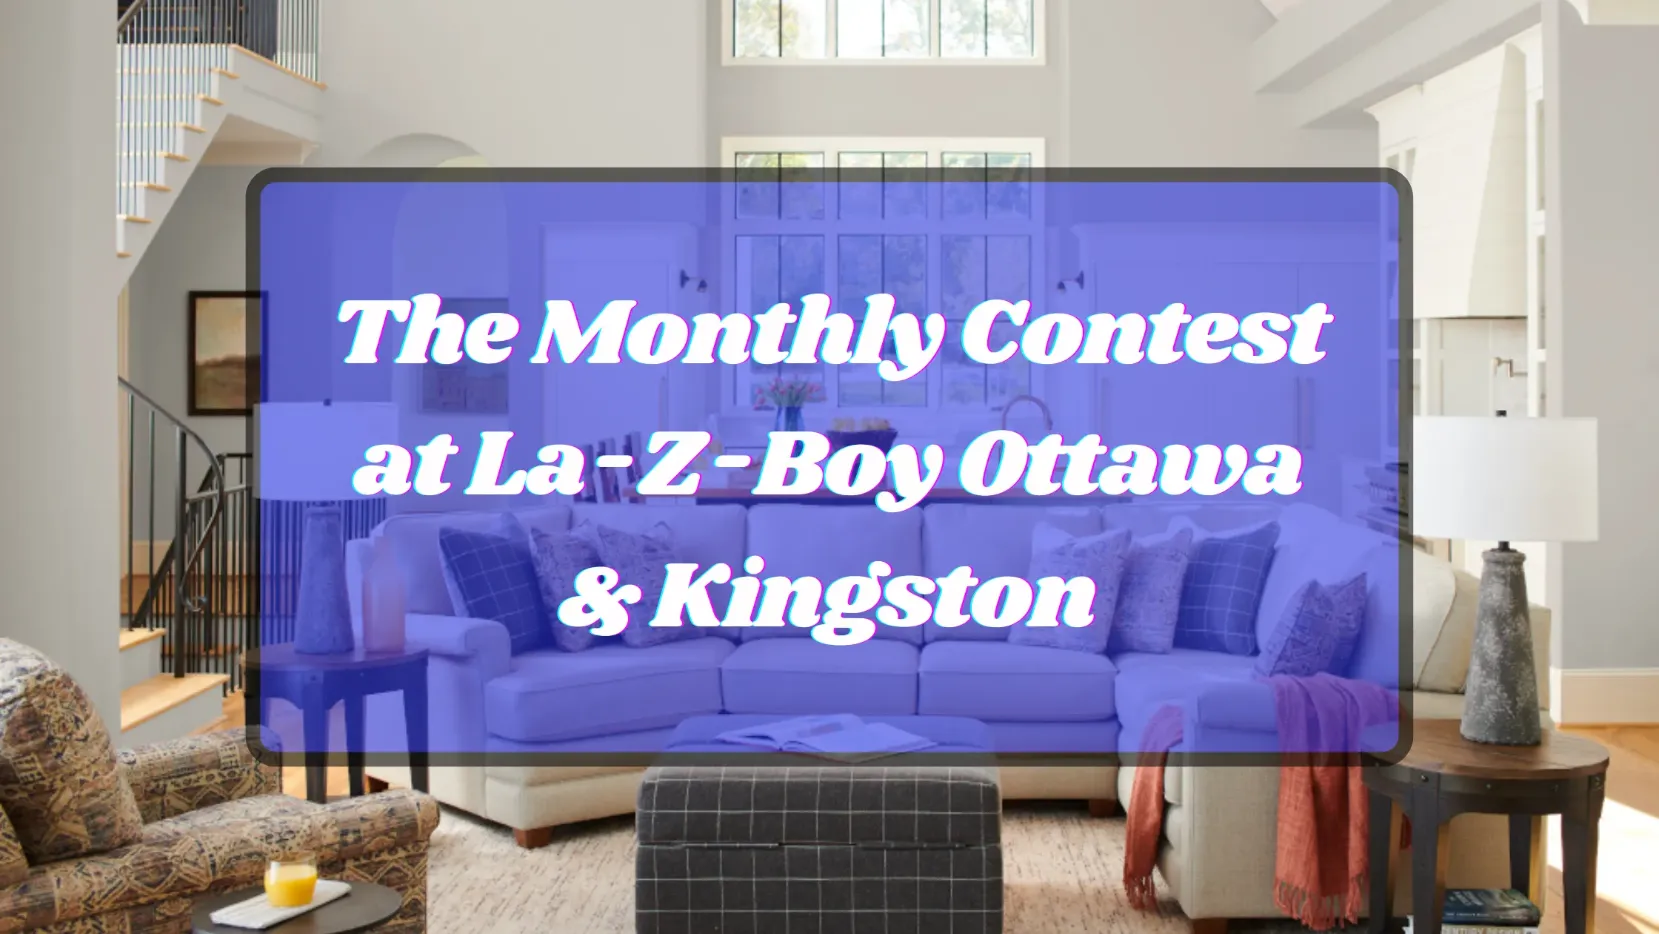 Le concours mensuel chez La-Z-Boy Ottawa et Kingston